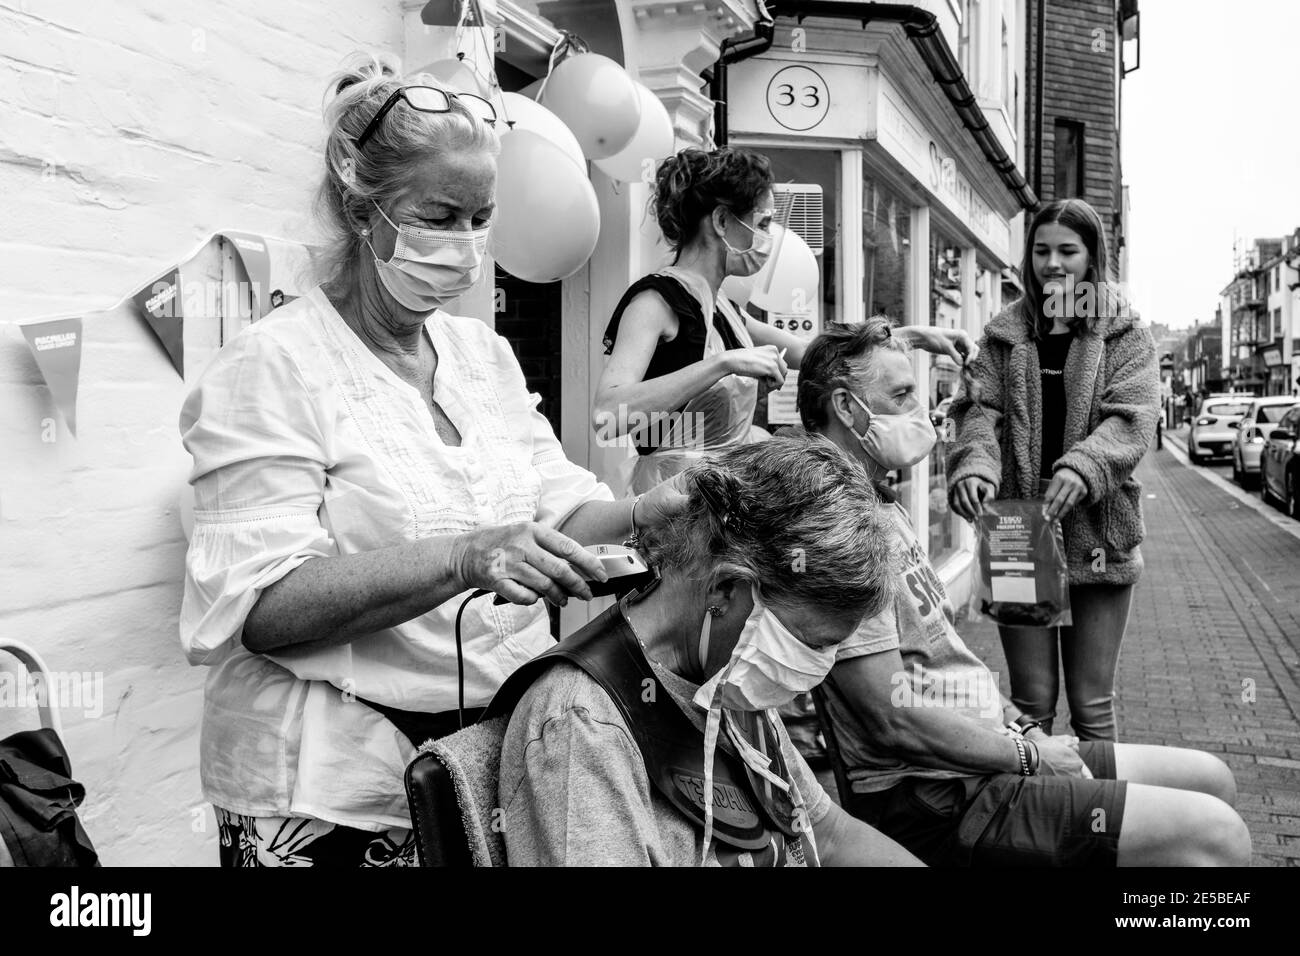 Les gens qui ont rasé leurs cheveux pour recueillir de l'argent pour la Macmillan cancer Care Charity, High Street, Lewes, East Sussex, Royaume-Uni. Banque D'Images